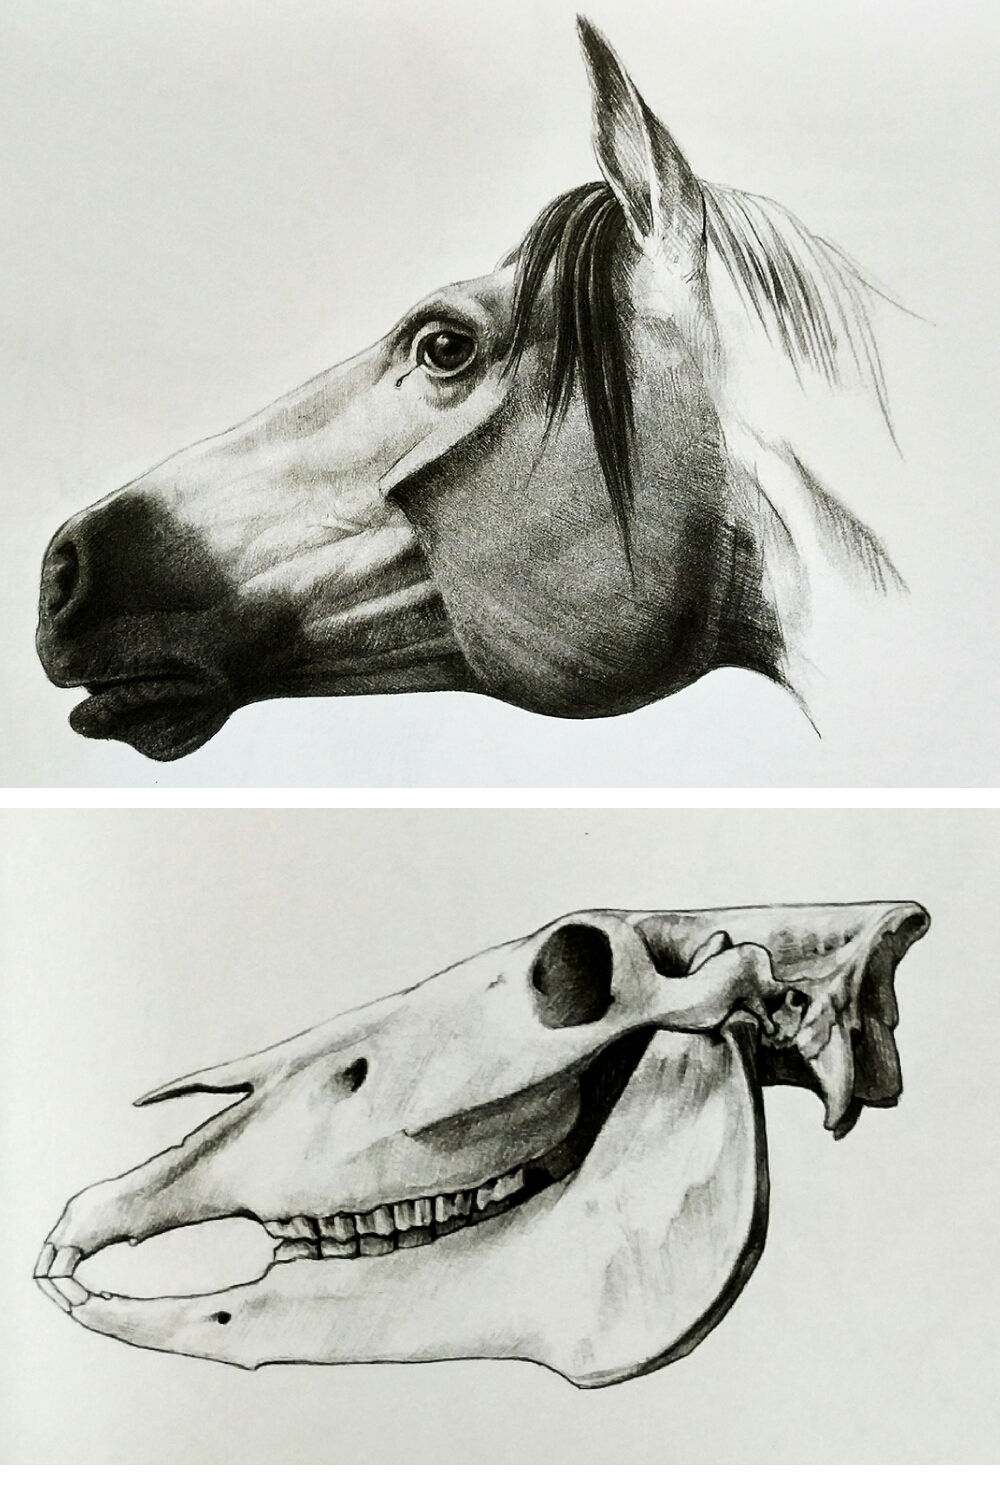 马的头部有一个显著特征是两侧颊骨的隆起,这是个狭长而突出的三角形